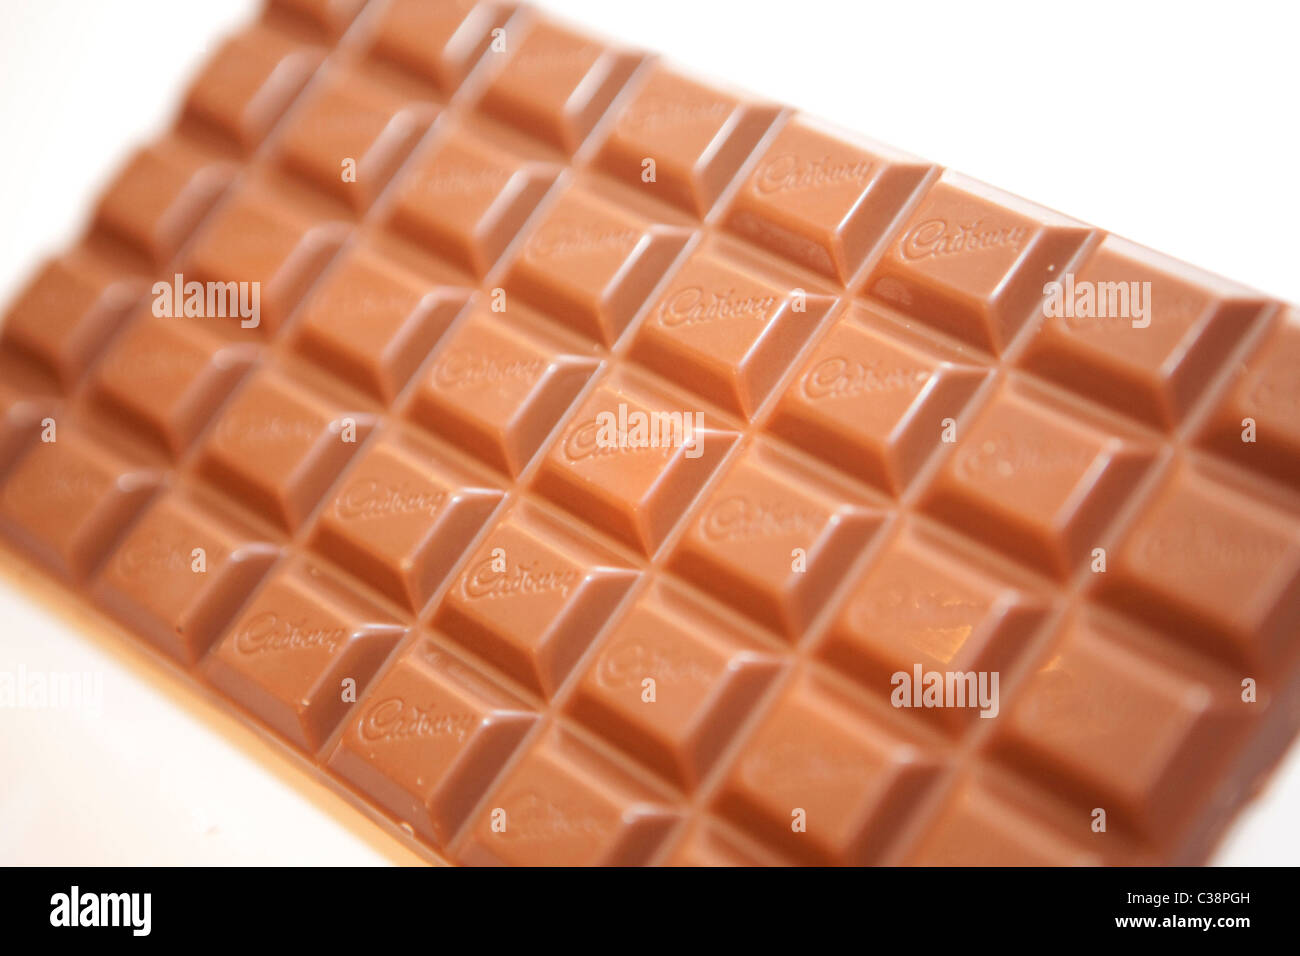 Image d'illustration de Cadbury's chocolat. Banque D'Images